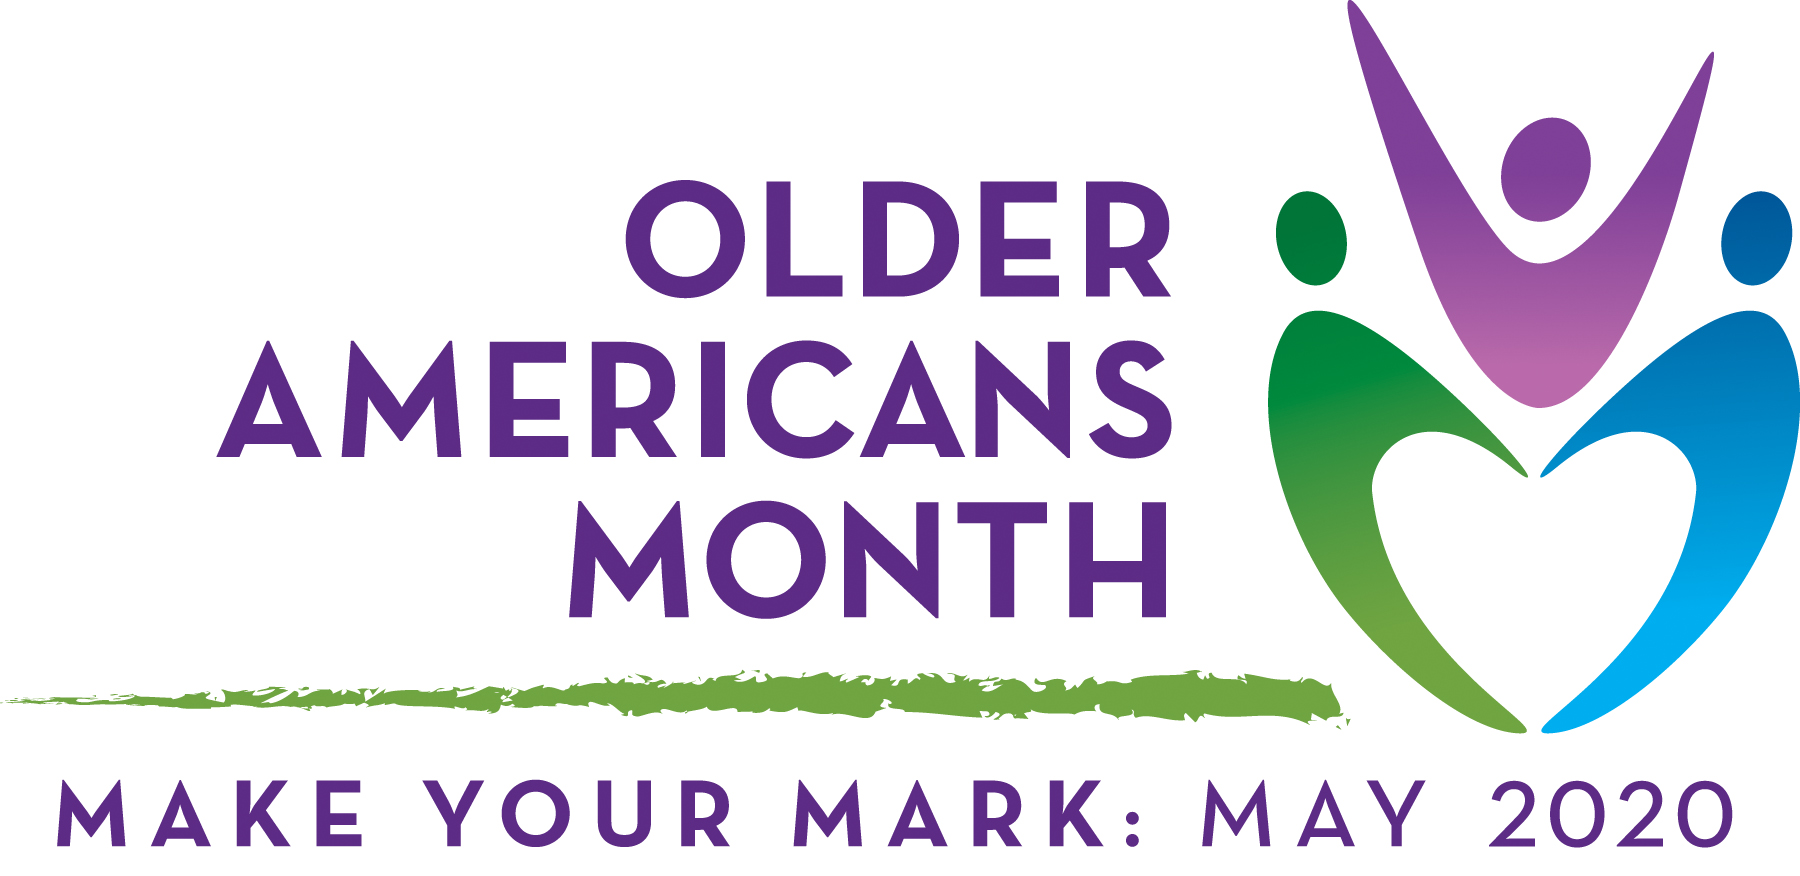 Older Americans Month 2020: Make Your Mark